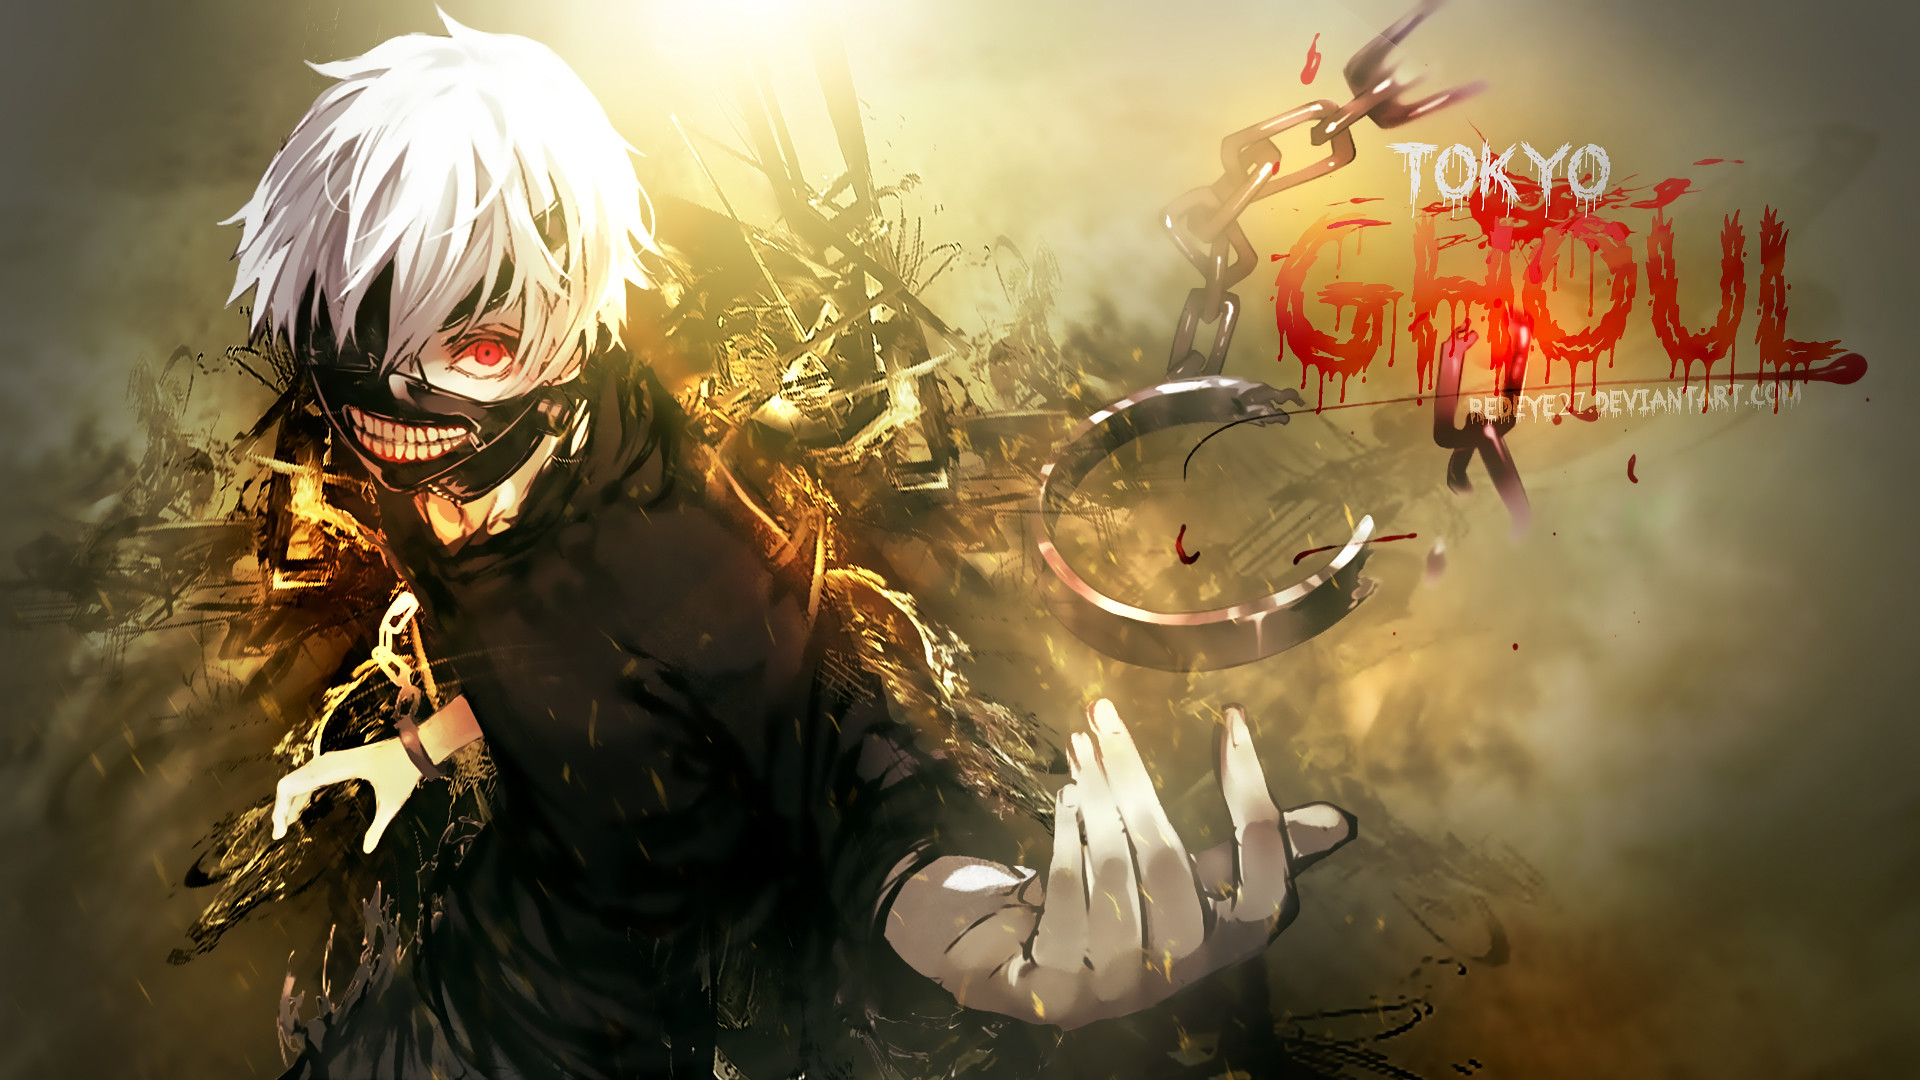 HD wallpaper: Anime, Tokyo Ghoul, Ken Kaneki, Mask